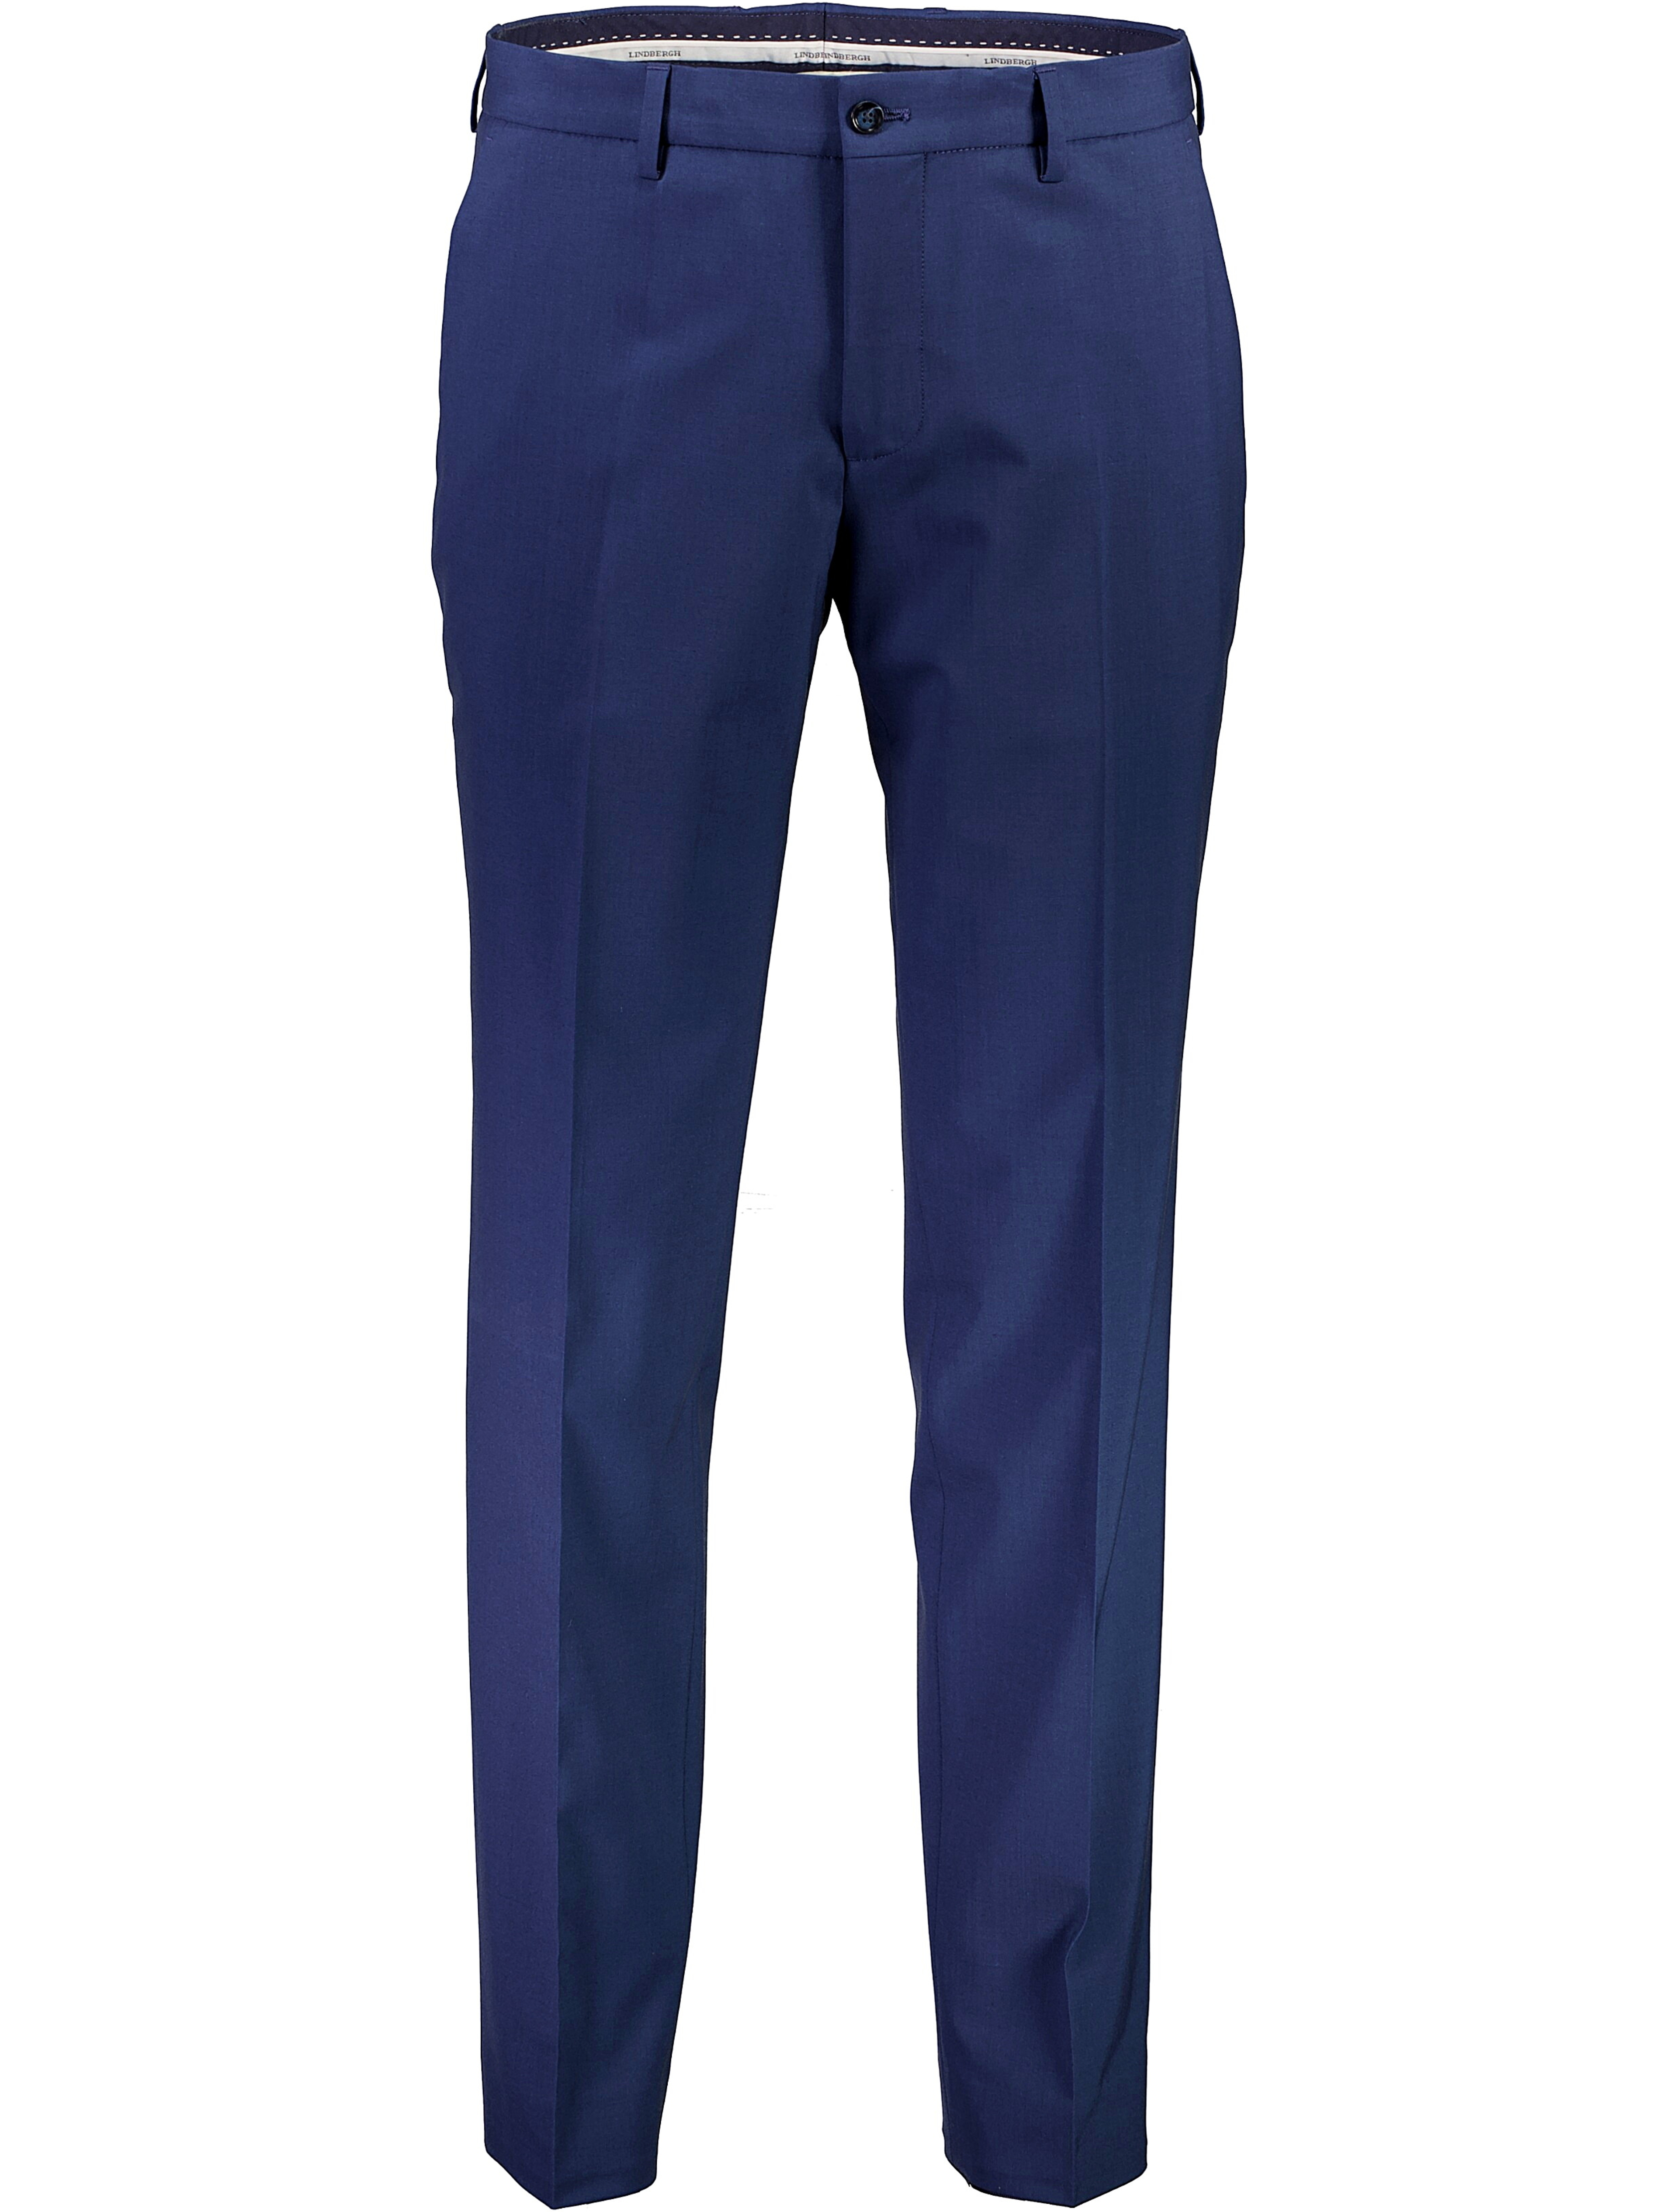 Lindbergh Suit Pants blue / mid navy